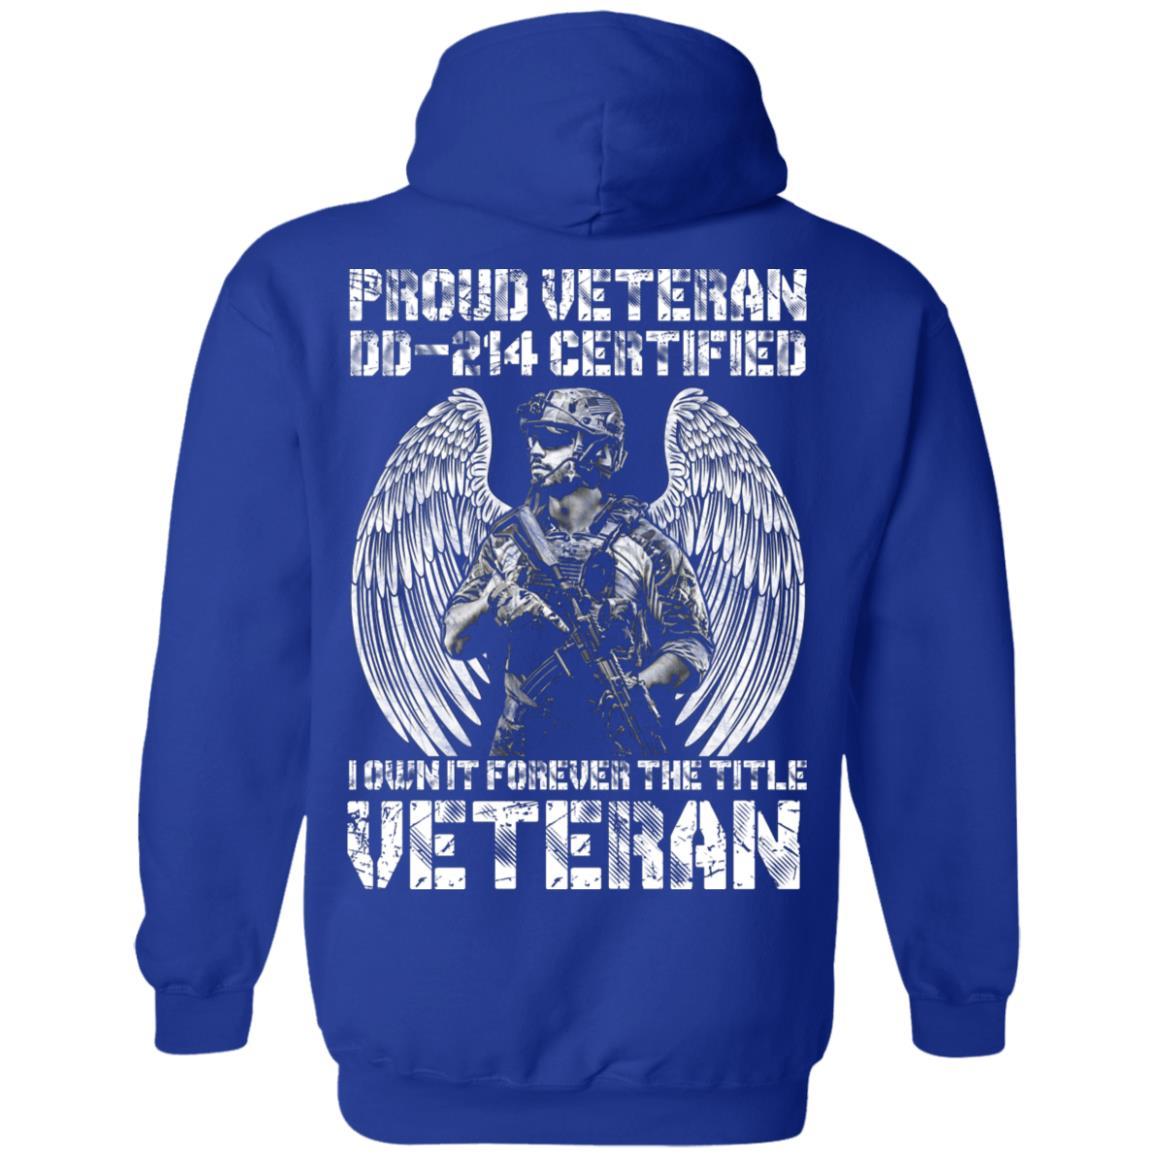 Military T-Shirt "Proud Veteran DD-214 I Own It Forever Men" On Back-TShirt-General-Veterans Nation